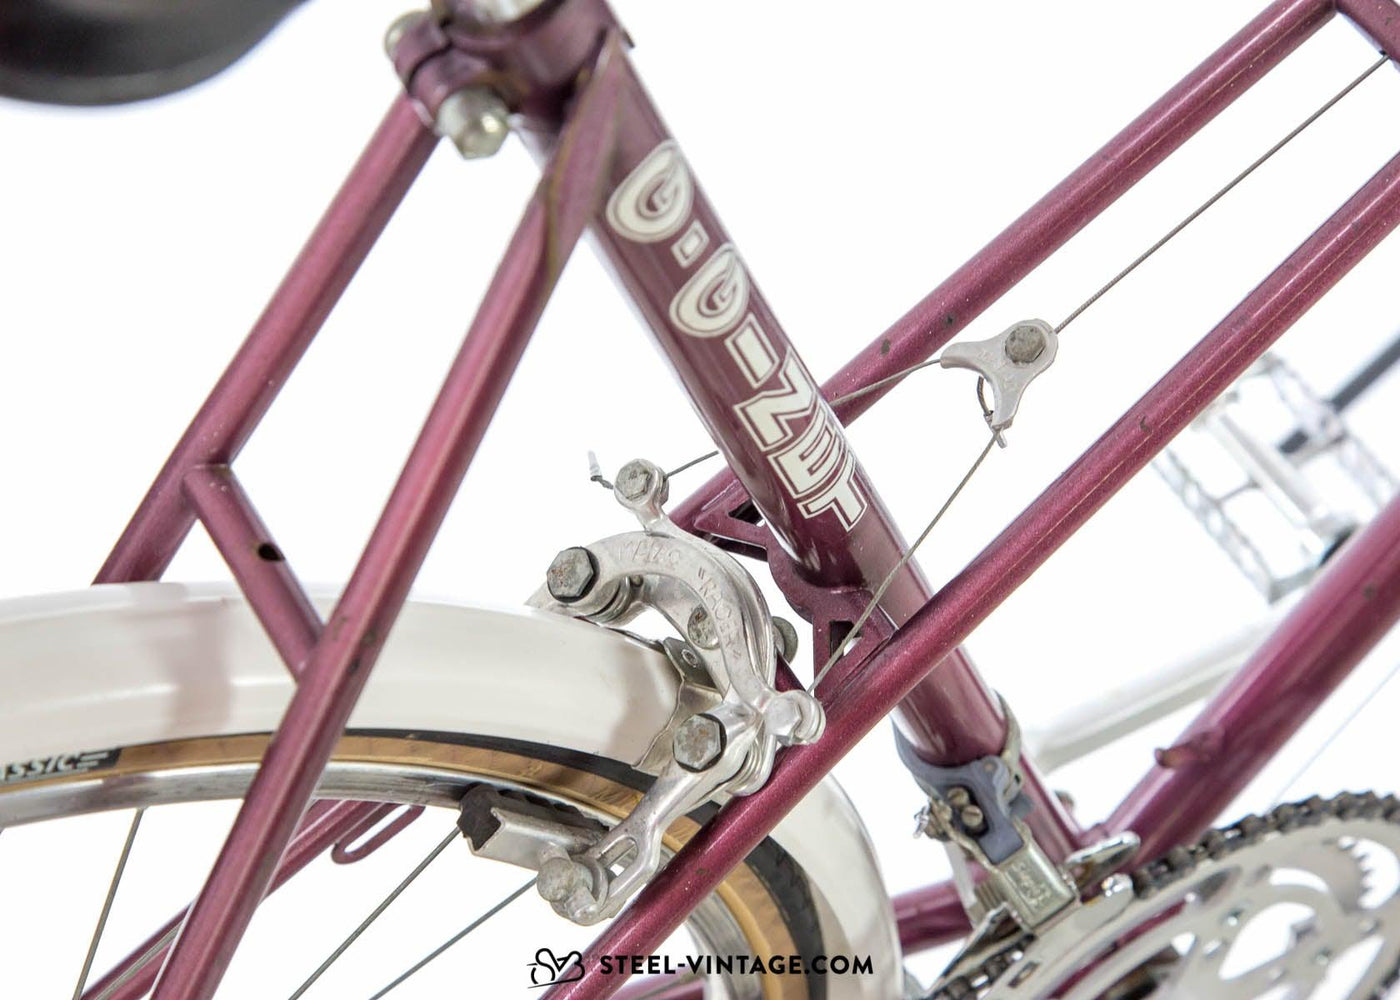 G.Ginet Classic Ladies Bicycle - Steel Vintage Bikes